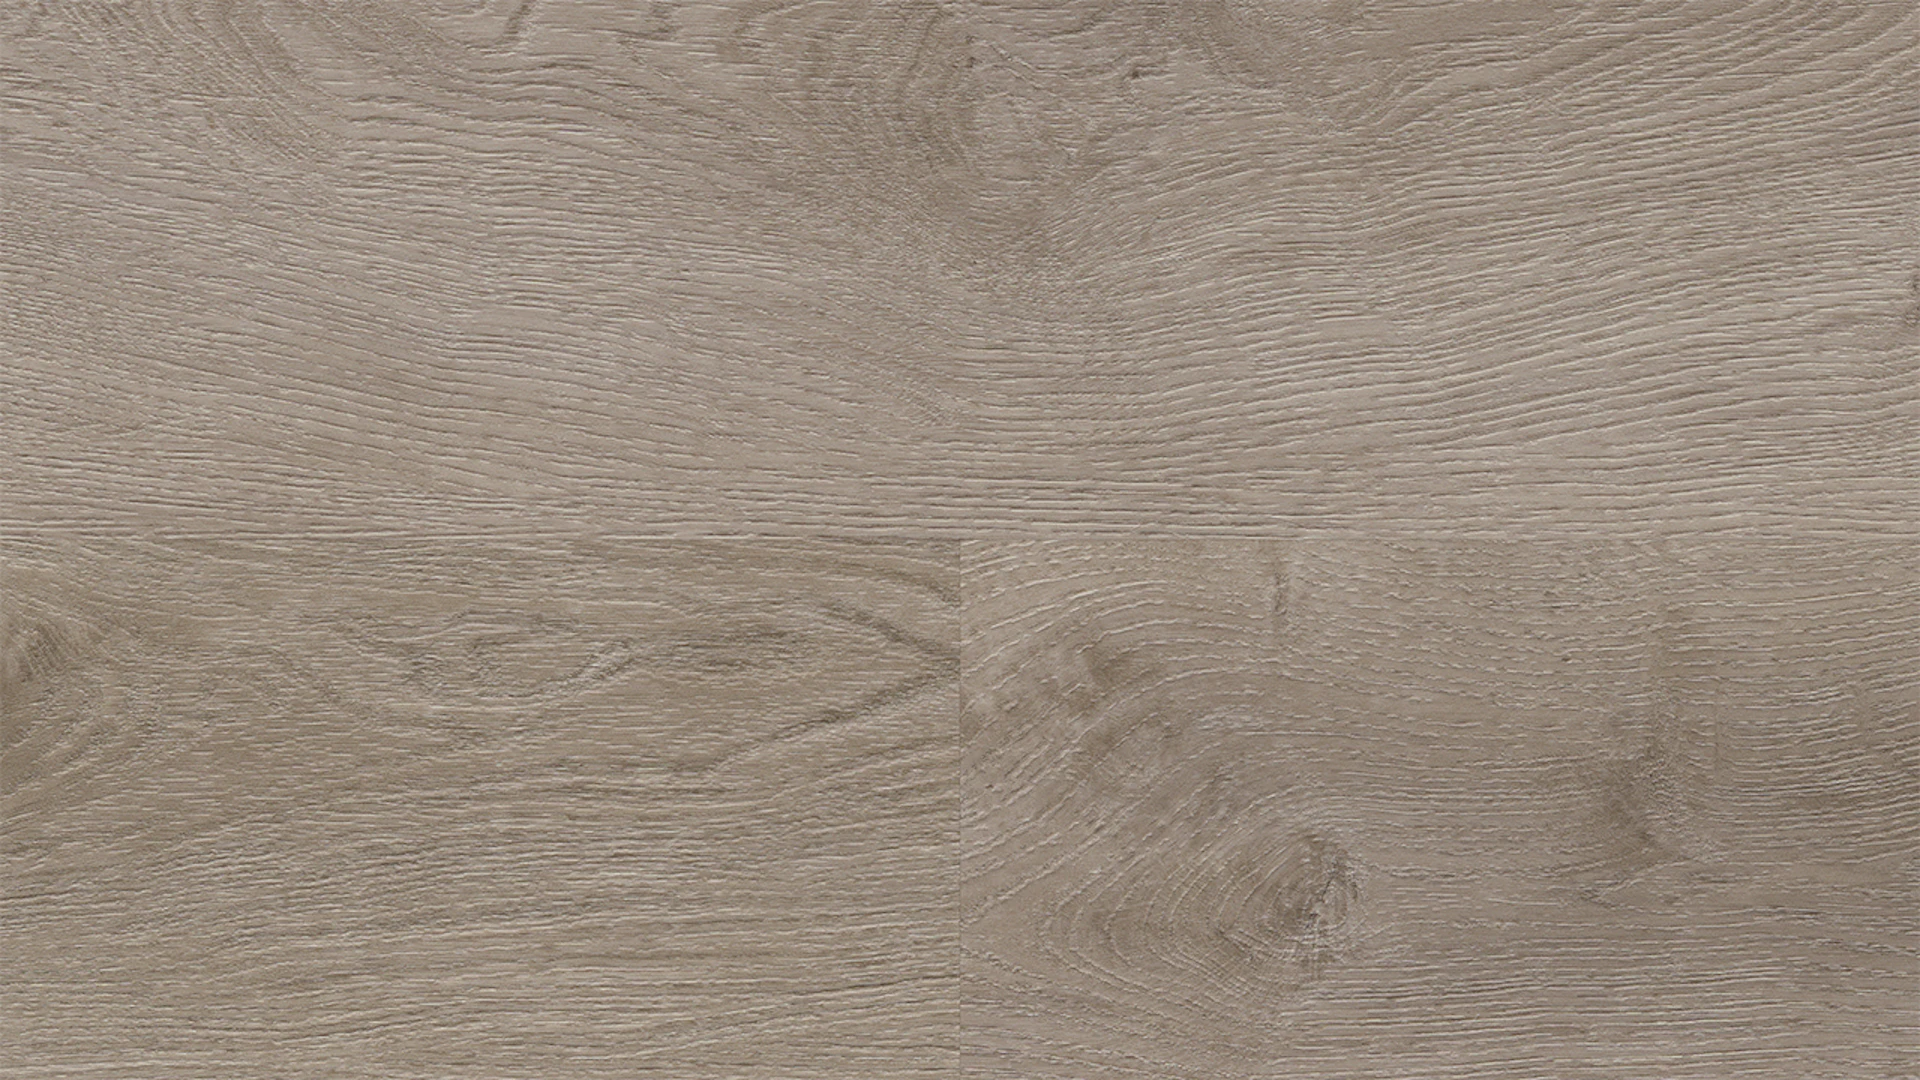 Wineo Klebevinyl - 400 wood L Balanced Oak Grey | Synchronprägung (DB287WL)